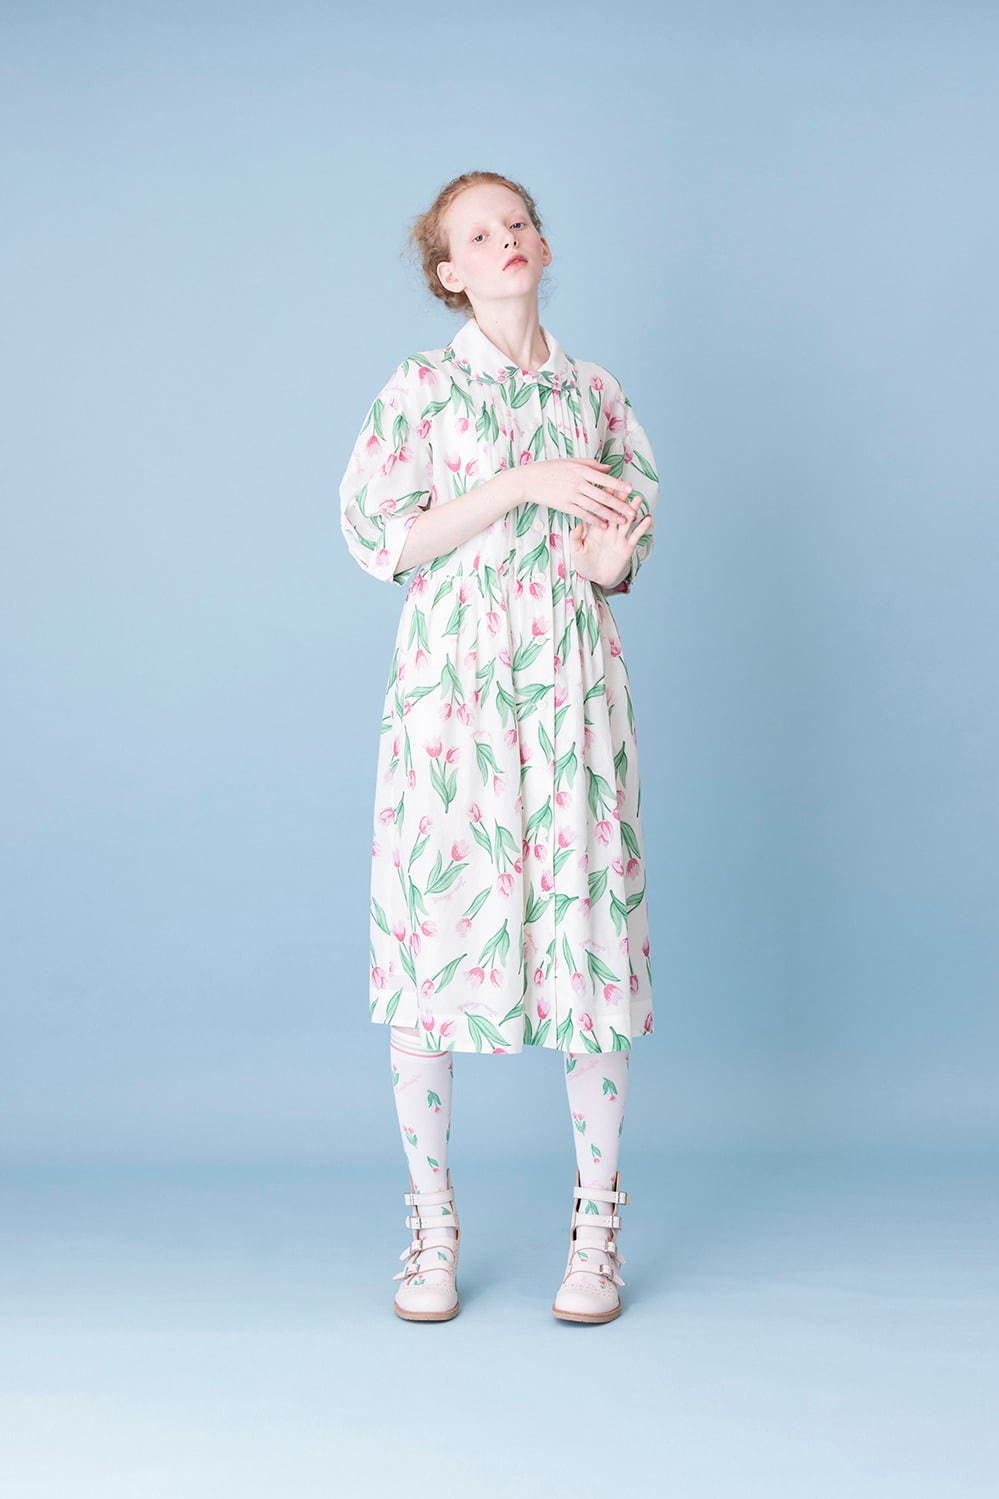 ジェーンマープル“チューリップ”柄の新作ワンピースやスカート、花刺繍